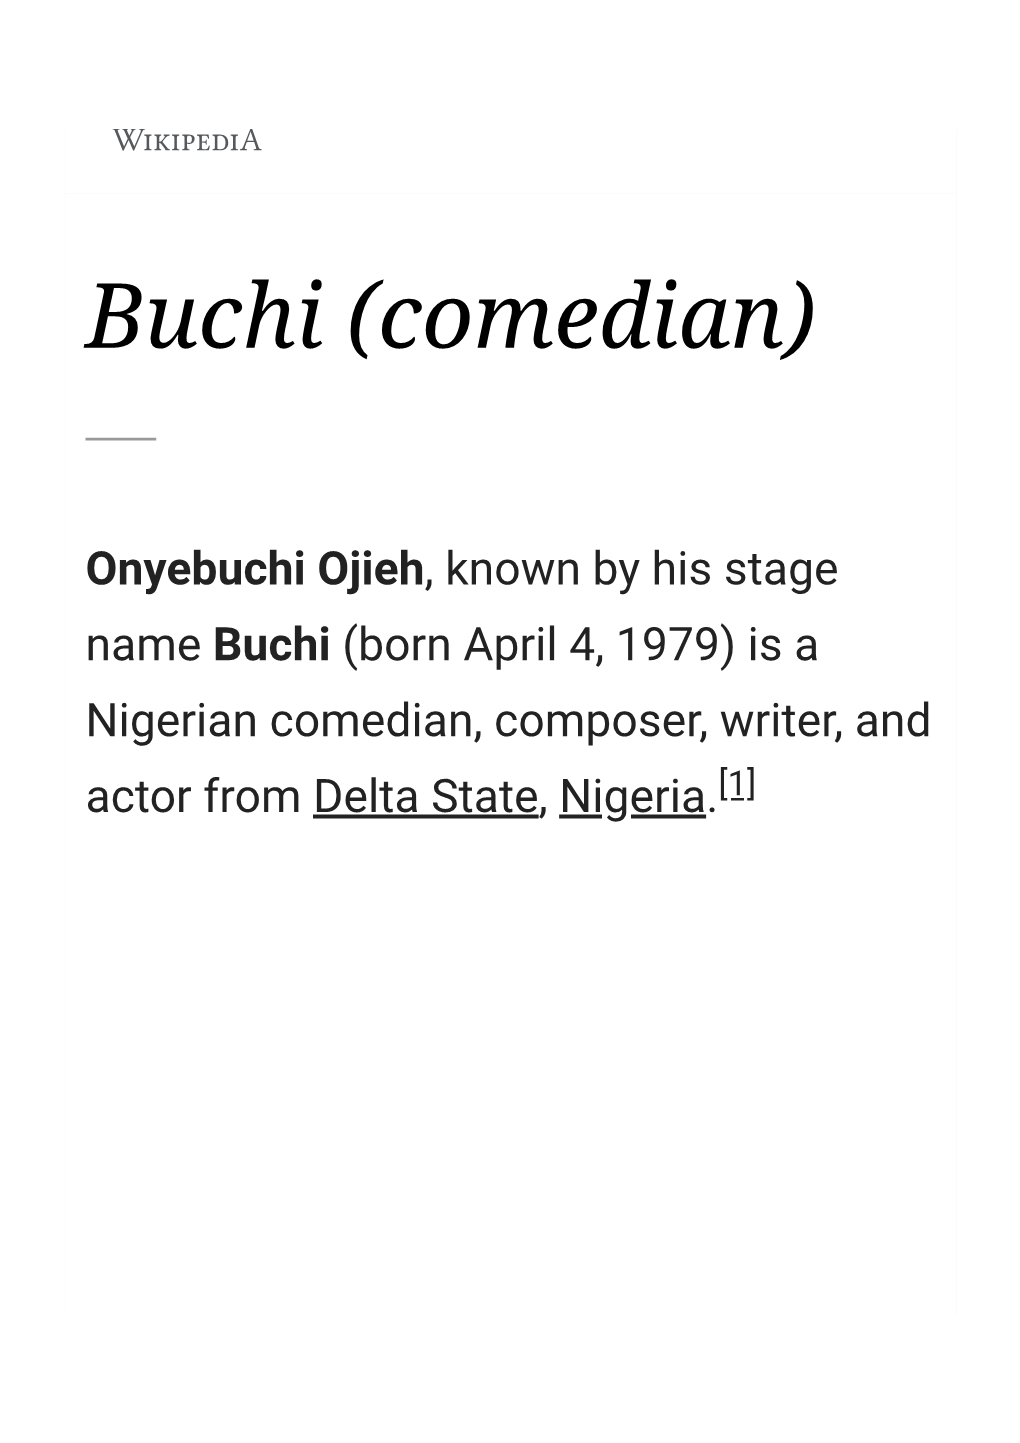 Buchi (Comedian)